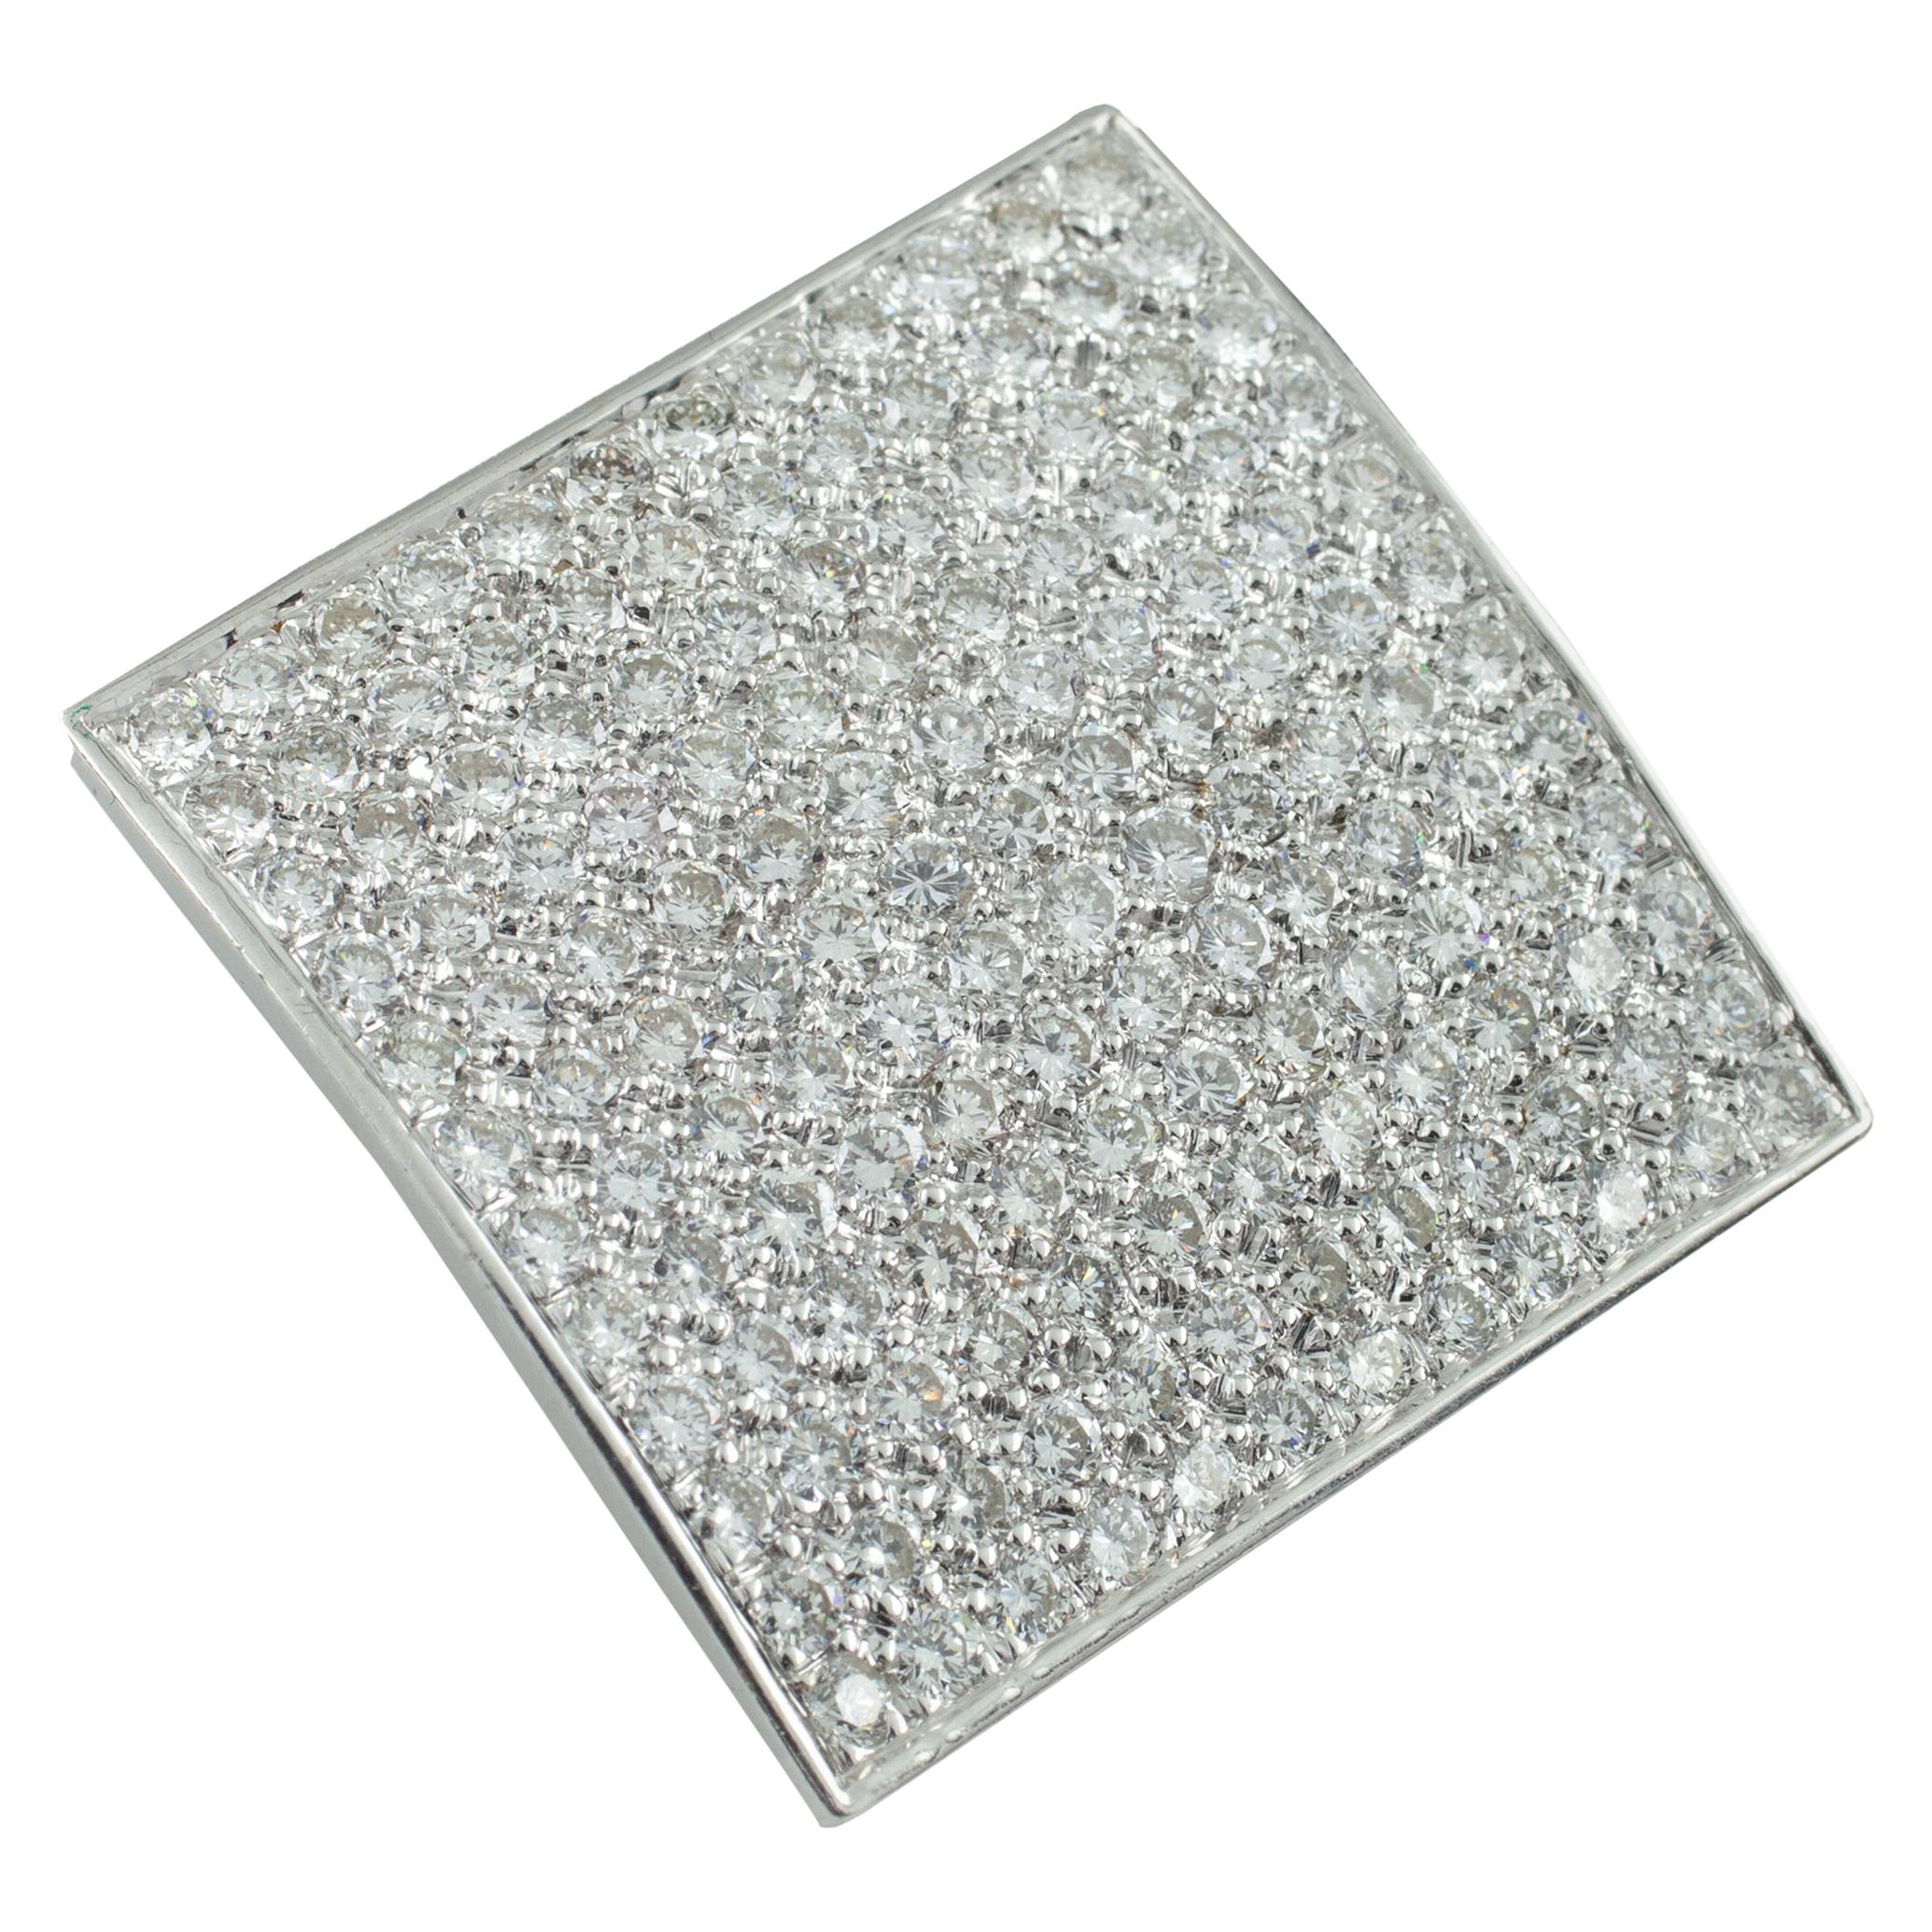 3.50 Carat Diamond 18 Karat White Gold Square Plaque Pendant